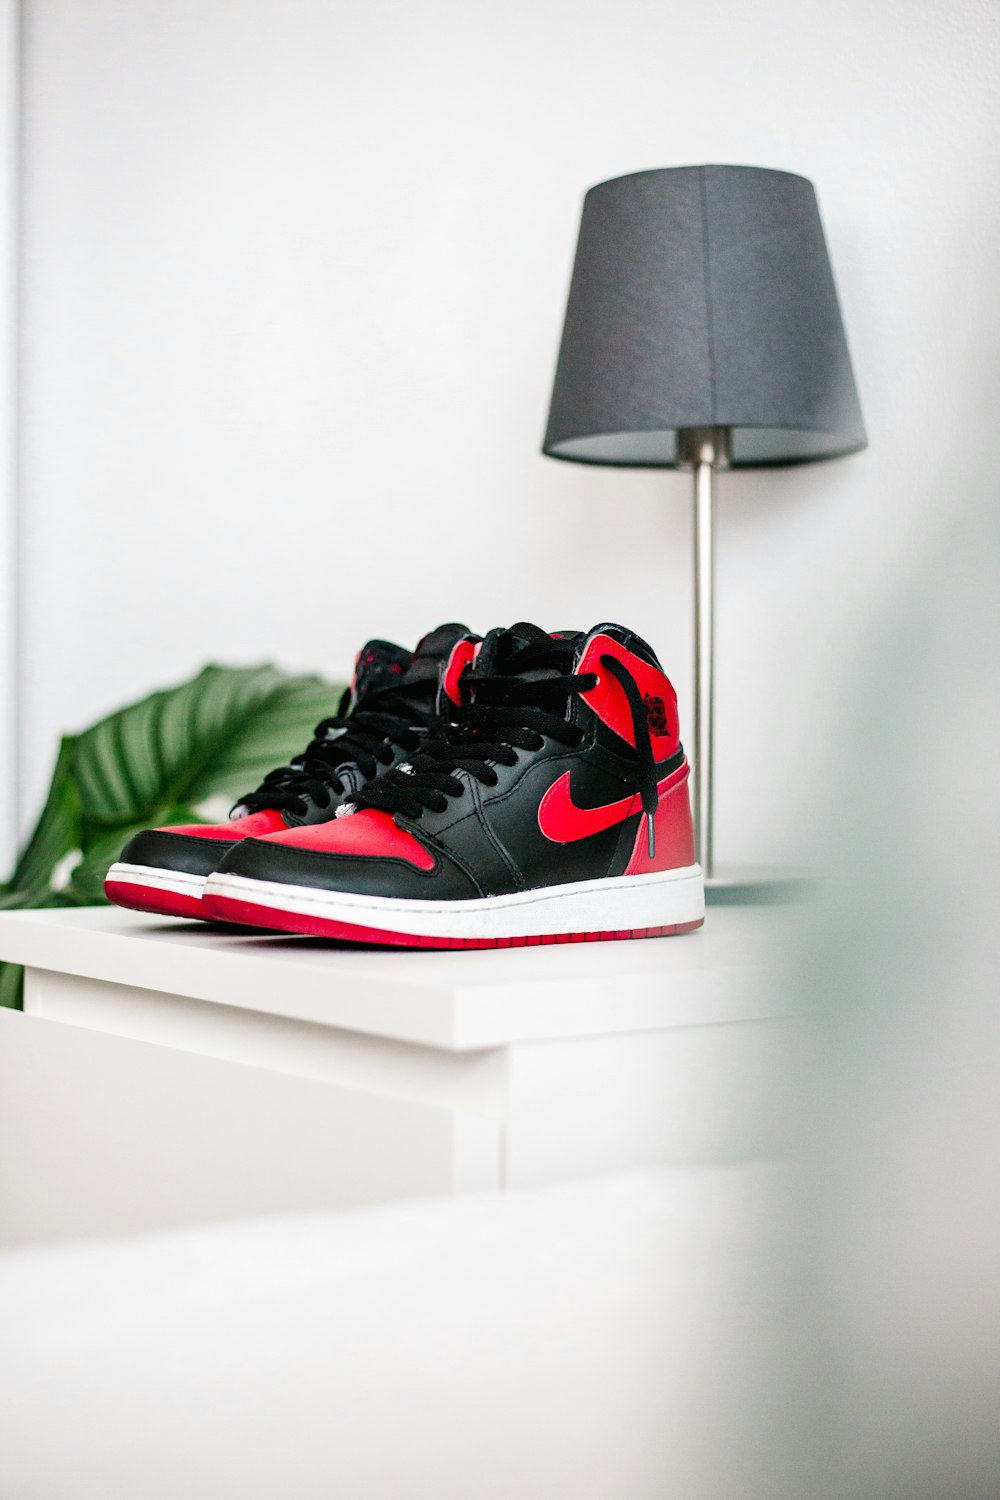 Schwarze und rote Nike Sneakers auf weißem Tisch